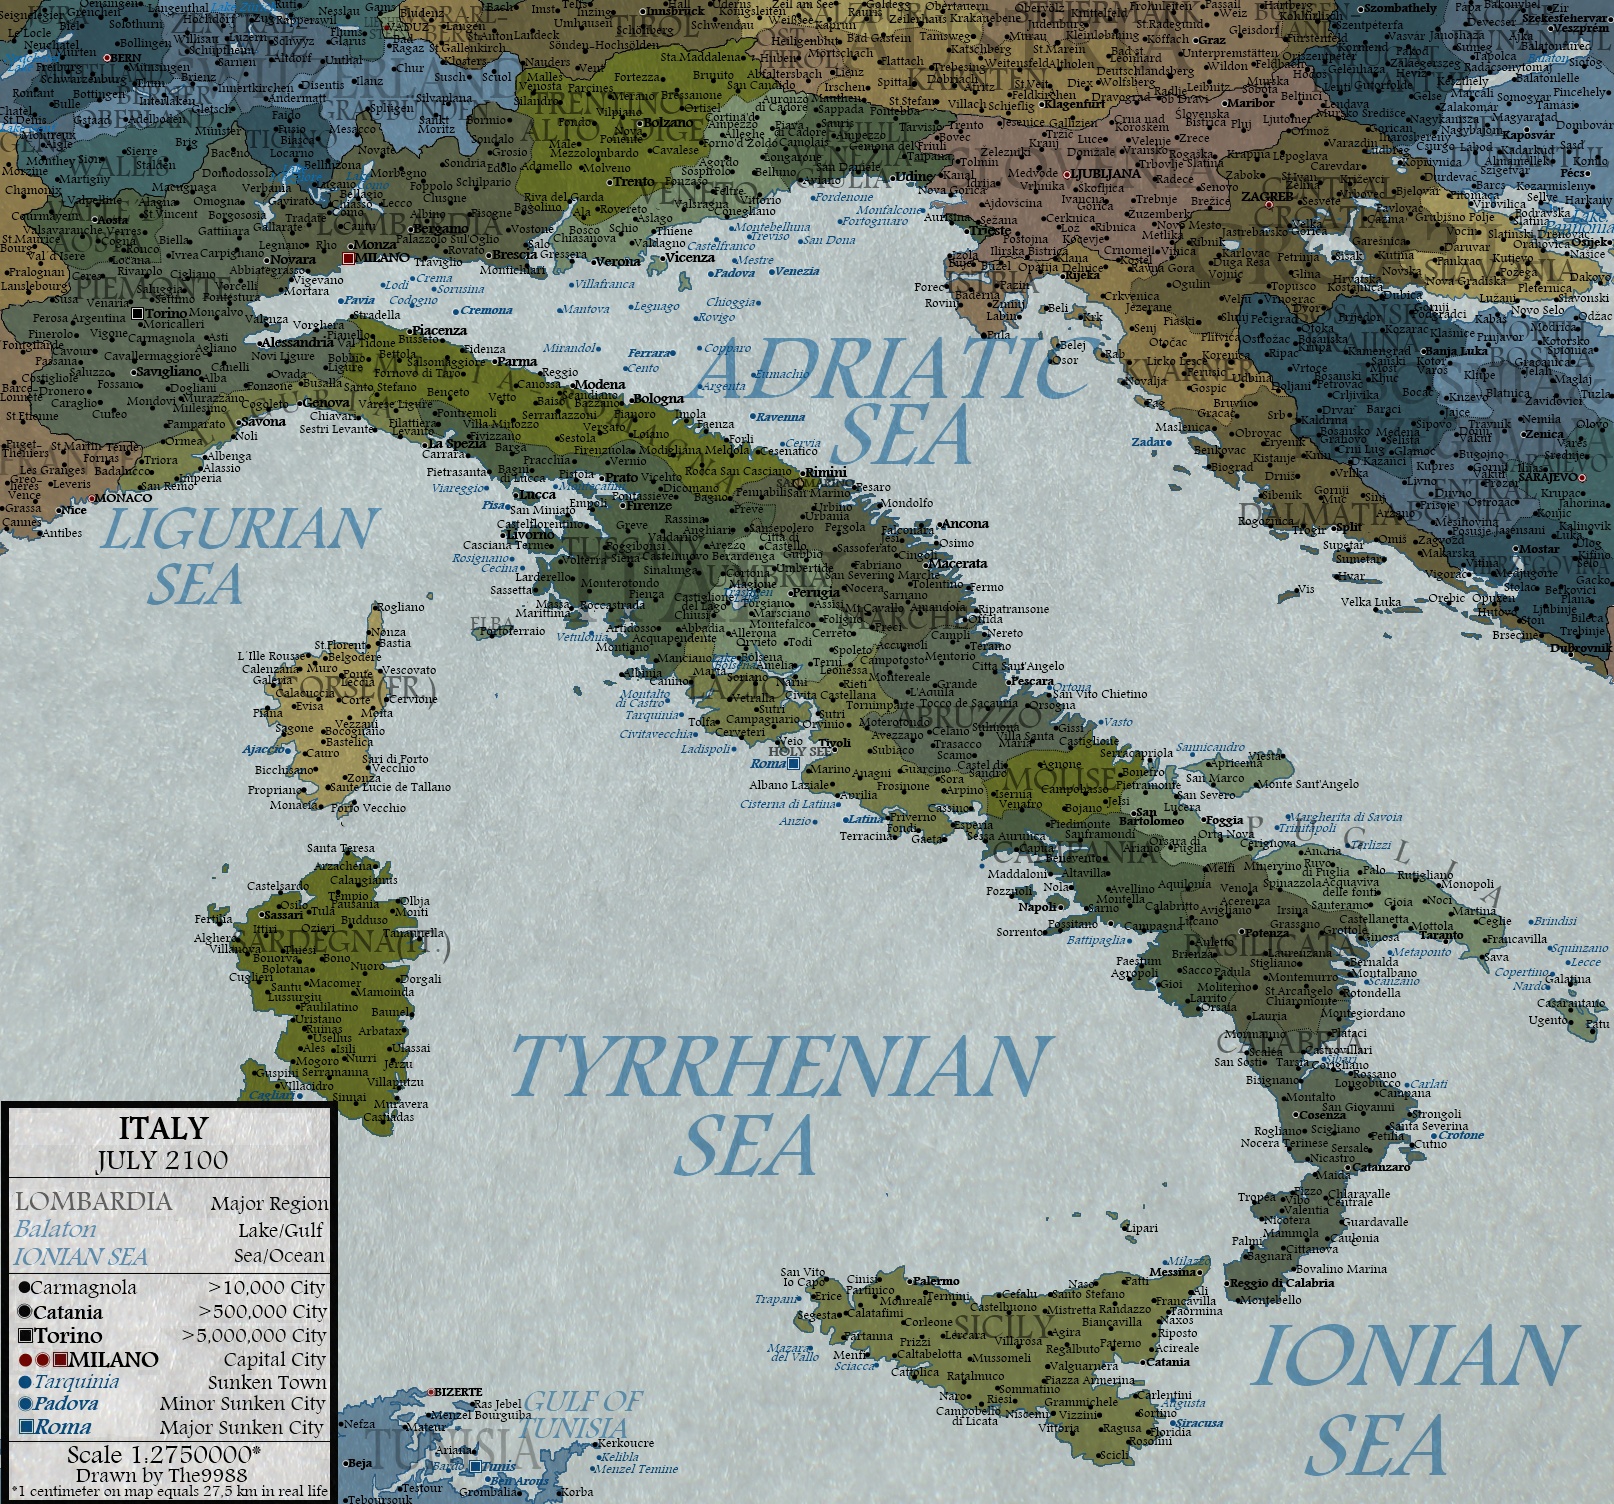 Italy in 2100